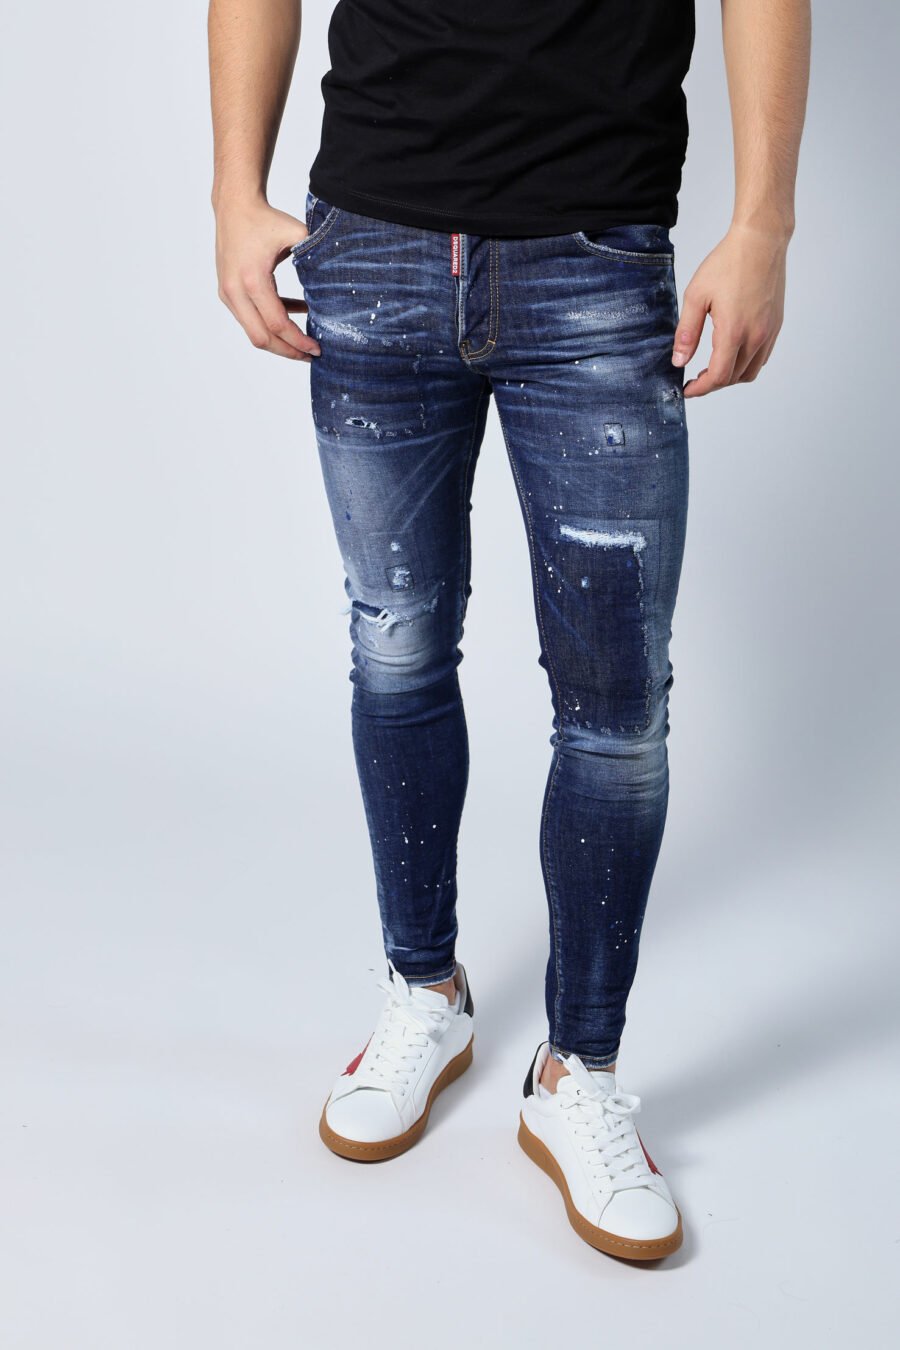 Blaue "super twinky jean" Jeans mit Patch und ausgefranst - Untitled Catalog 05665